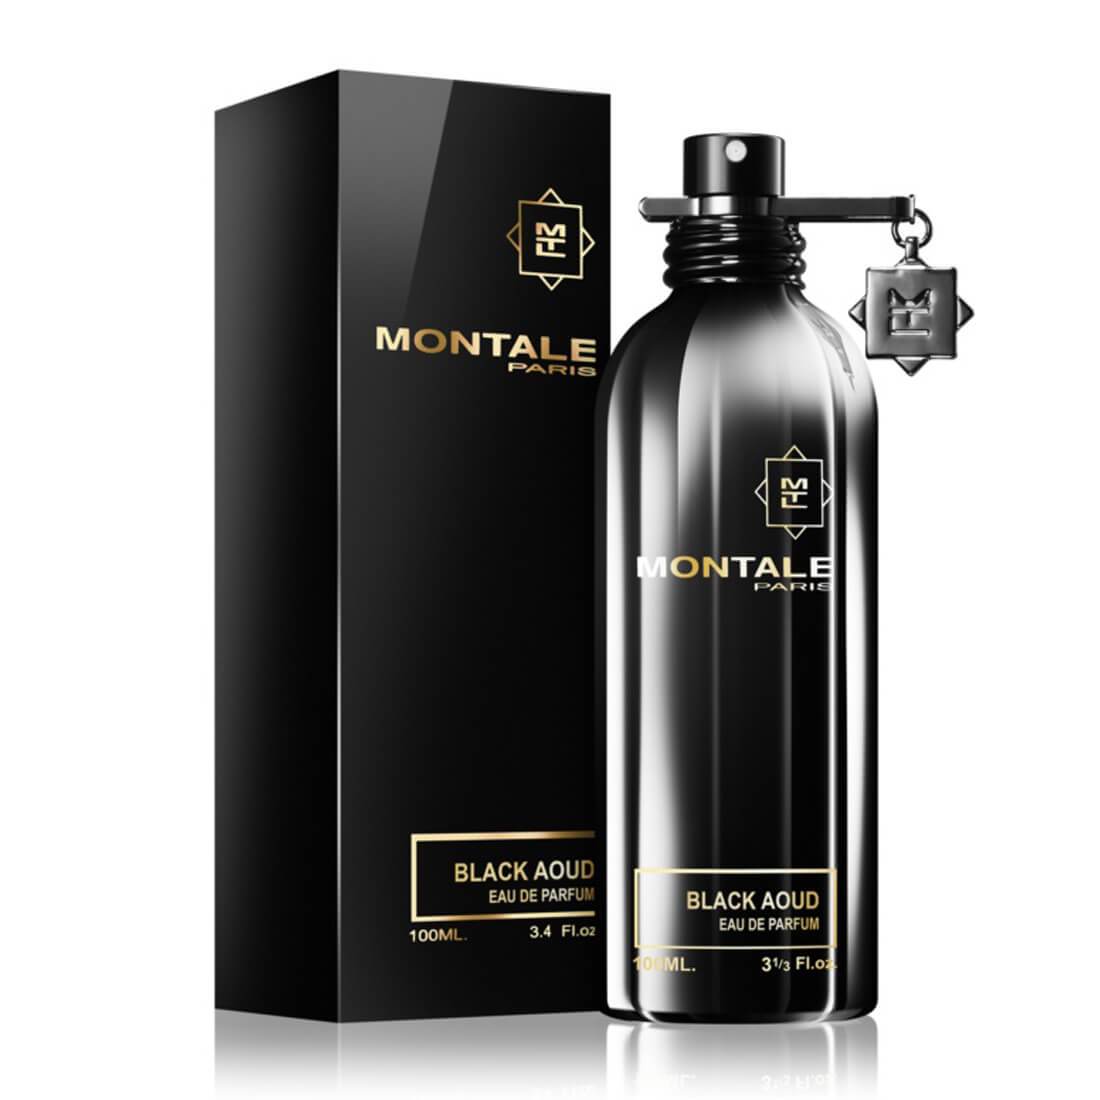 Montale Black Aoud Eau De Parfum 100ml - IZZAT DAOUK Lebanon